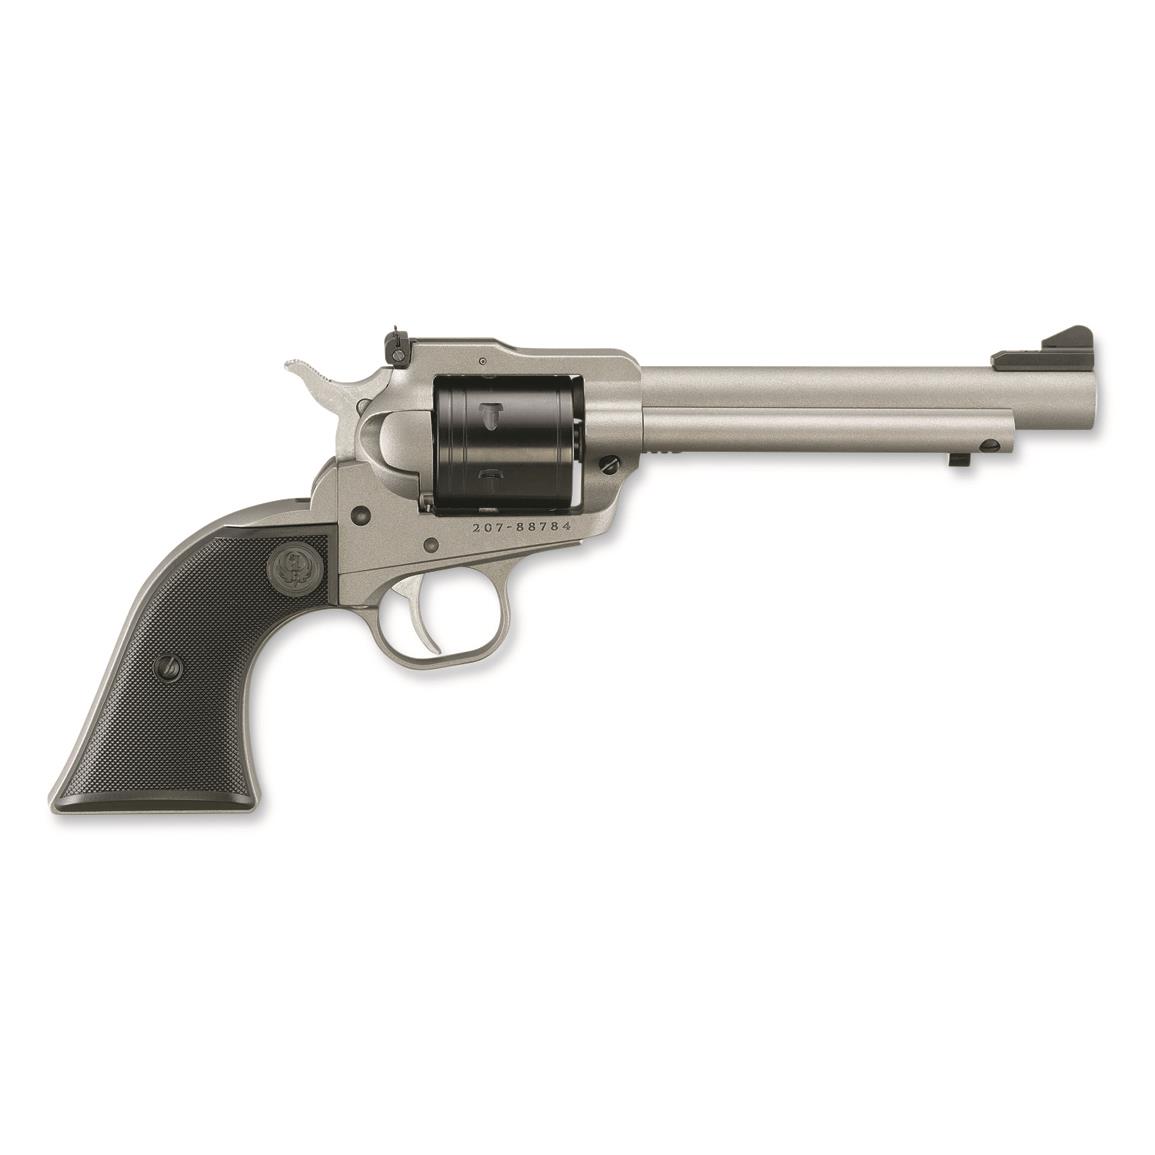 Ruger Super Wrangler Single Action, Revolver, .22LR/.22 Magnum, 5.5" Barrel, 6 Rounds